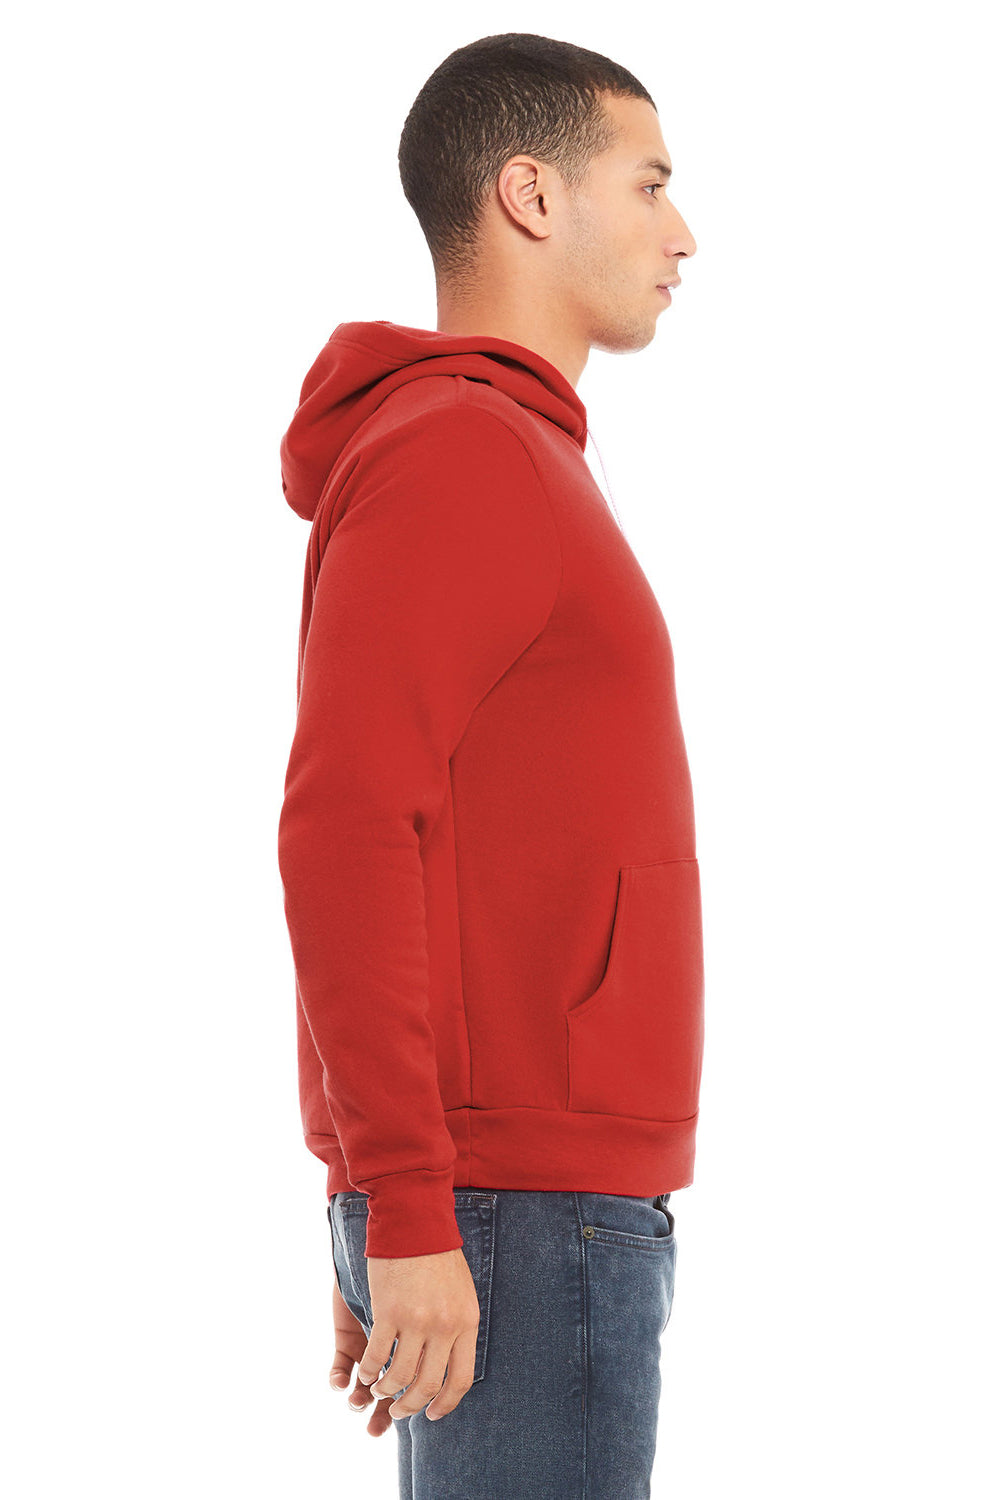 Bella + Canvas BC3719/3719 Mens Sponge Fleece Hooded Sweatshirt Hoodie Red Model Side